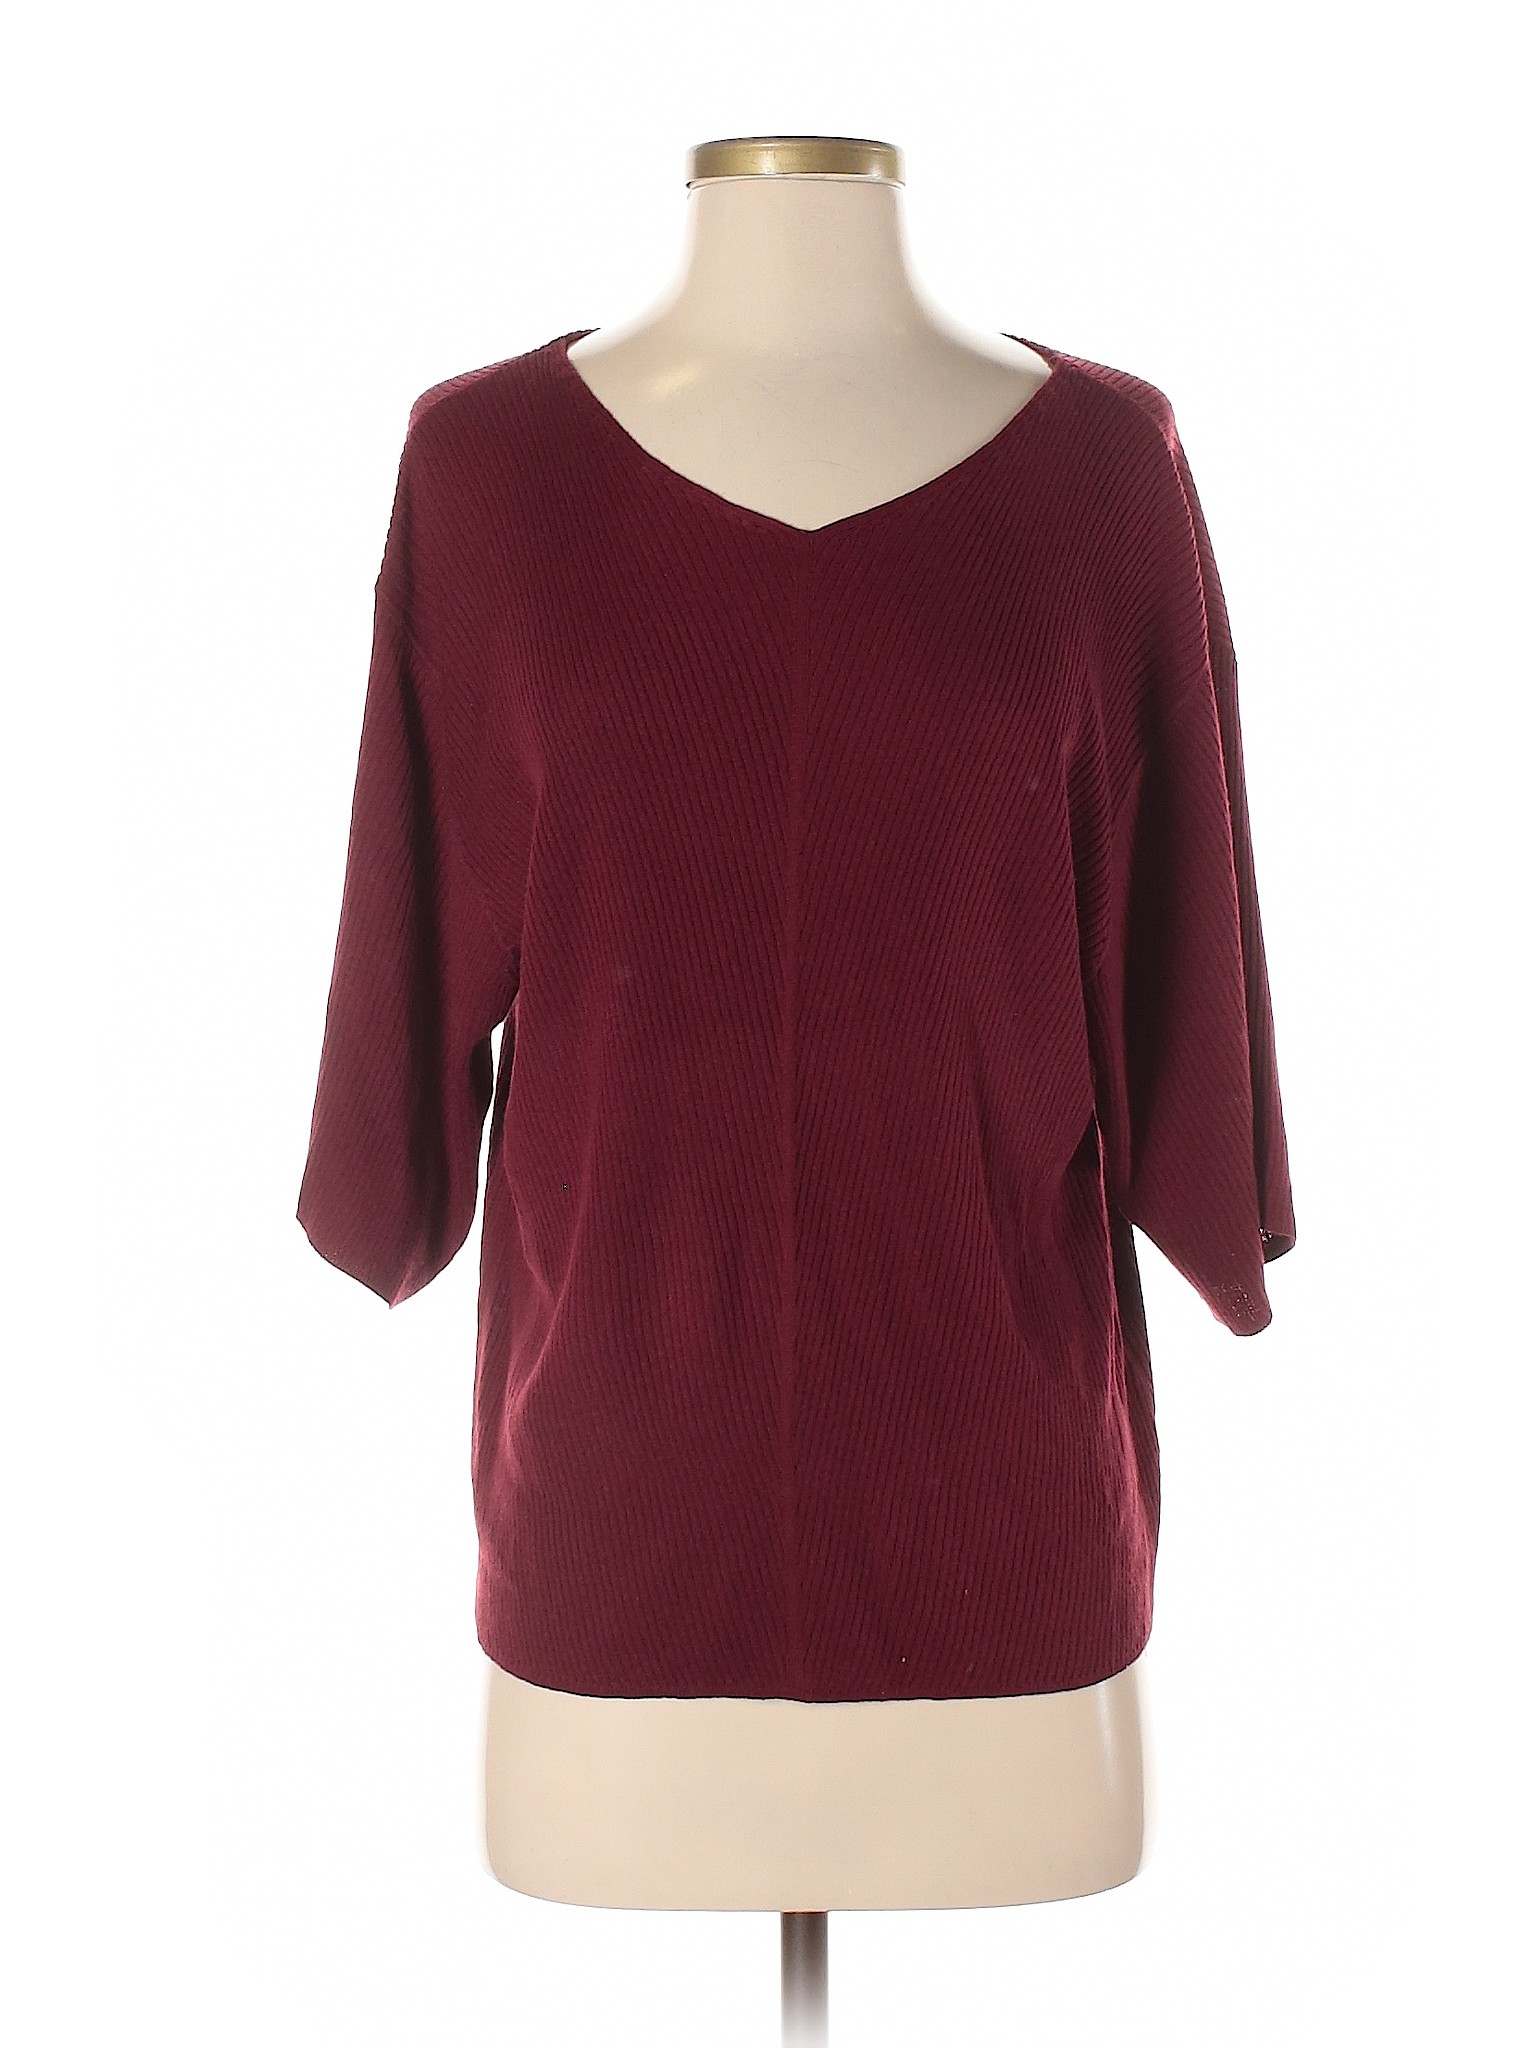 Uniqlo Women Red Pullover Sweater S | eBay